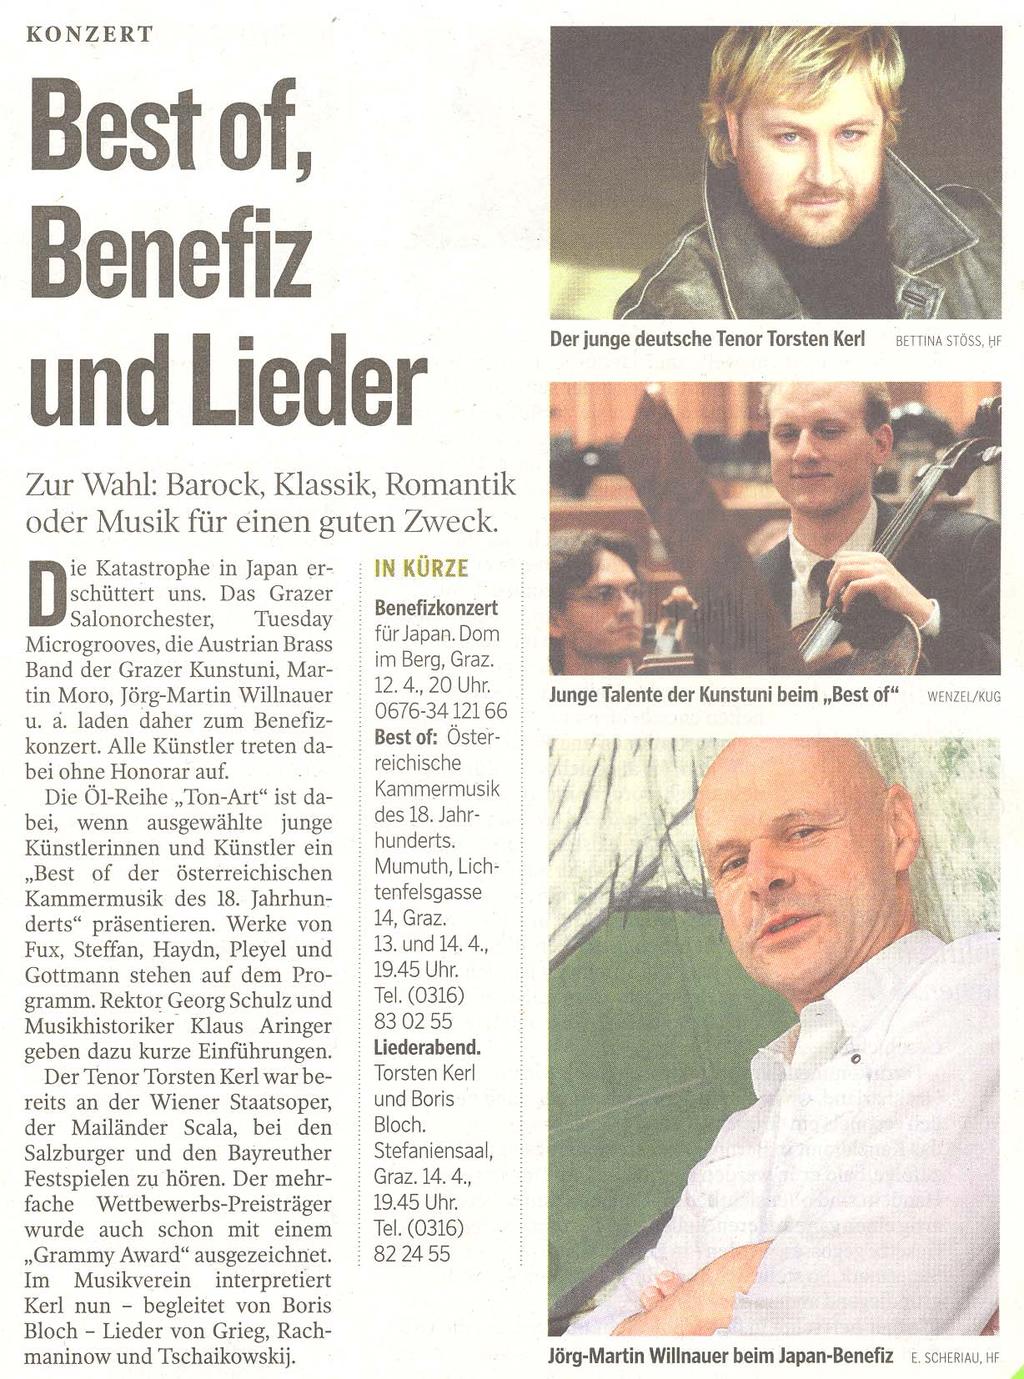 Kleine Zeitung, Aviso, 09.04.